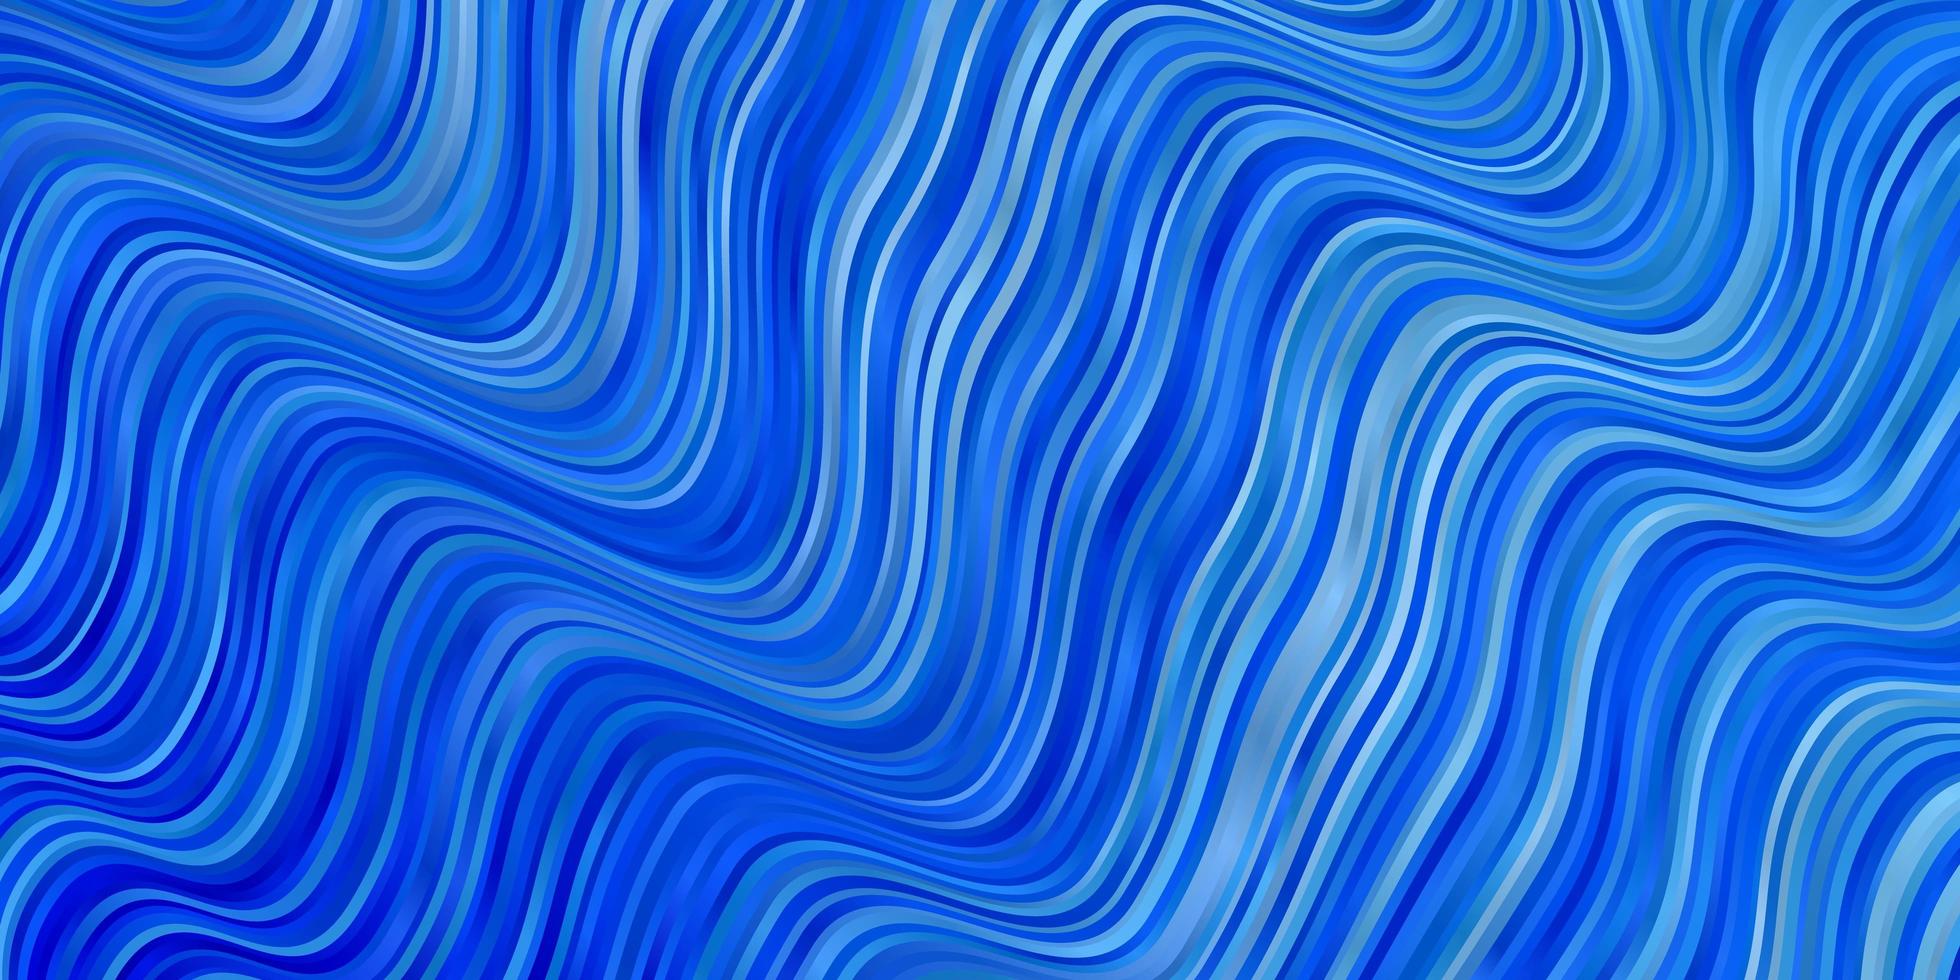 texture vettoriale blu chiaro con arco circolare